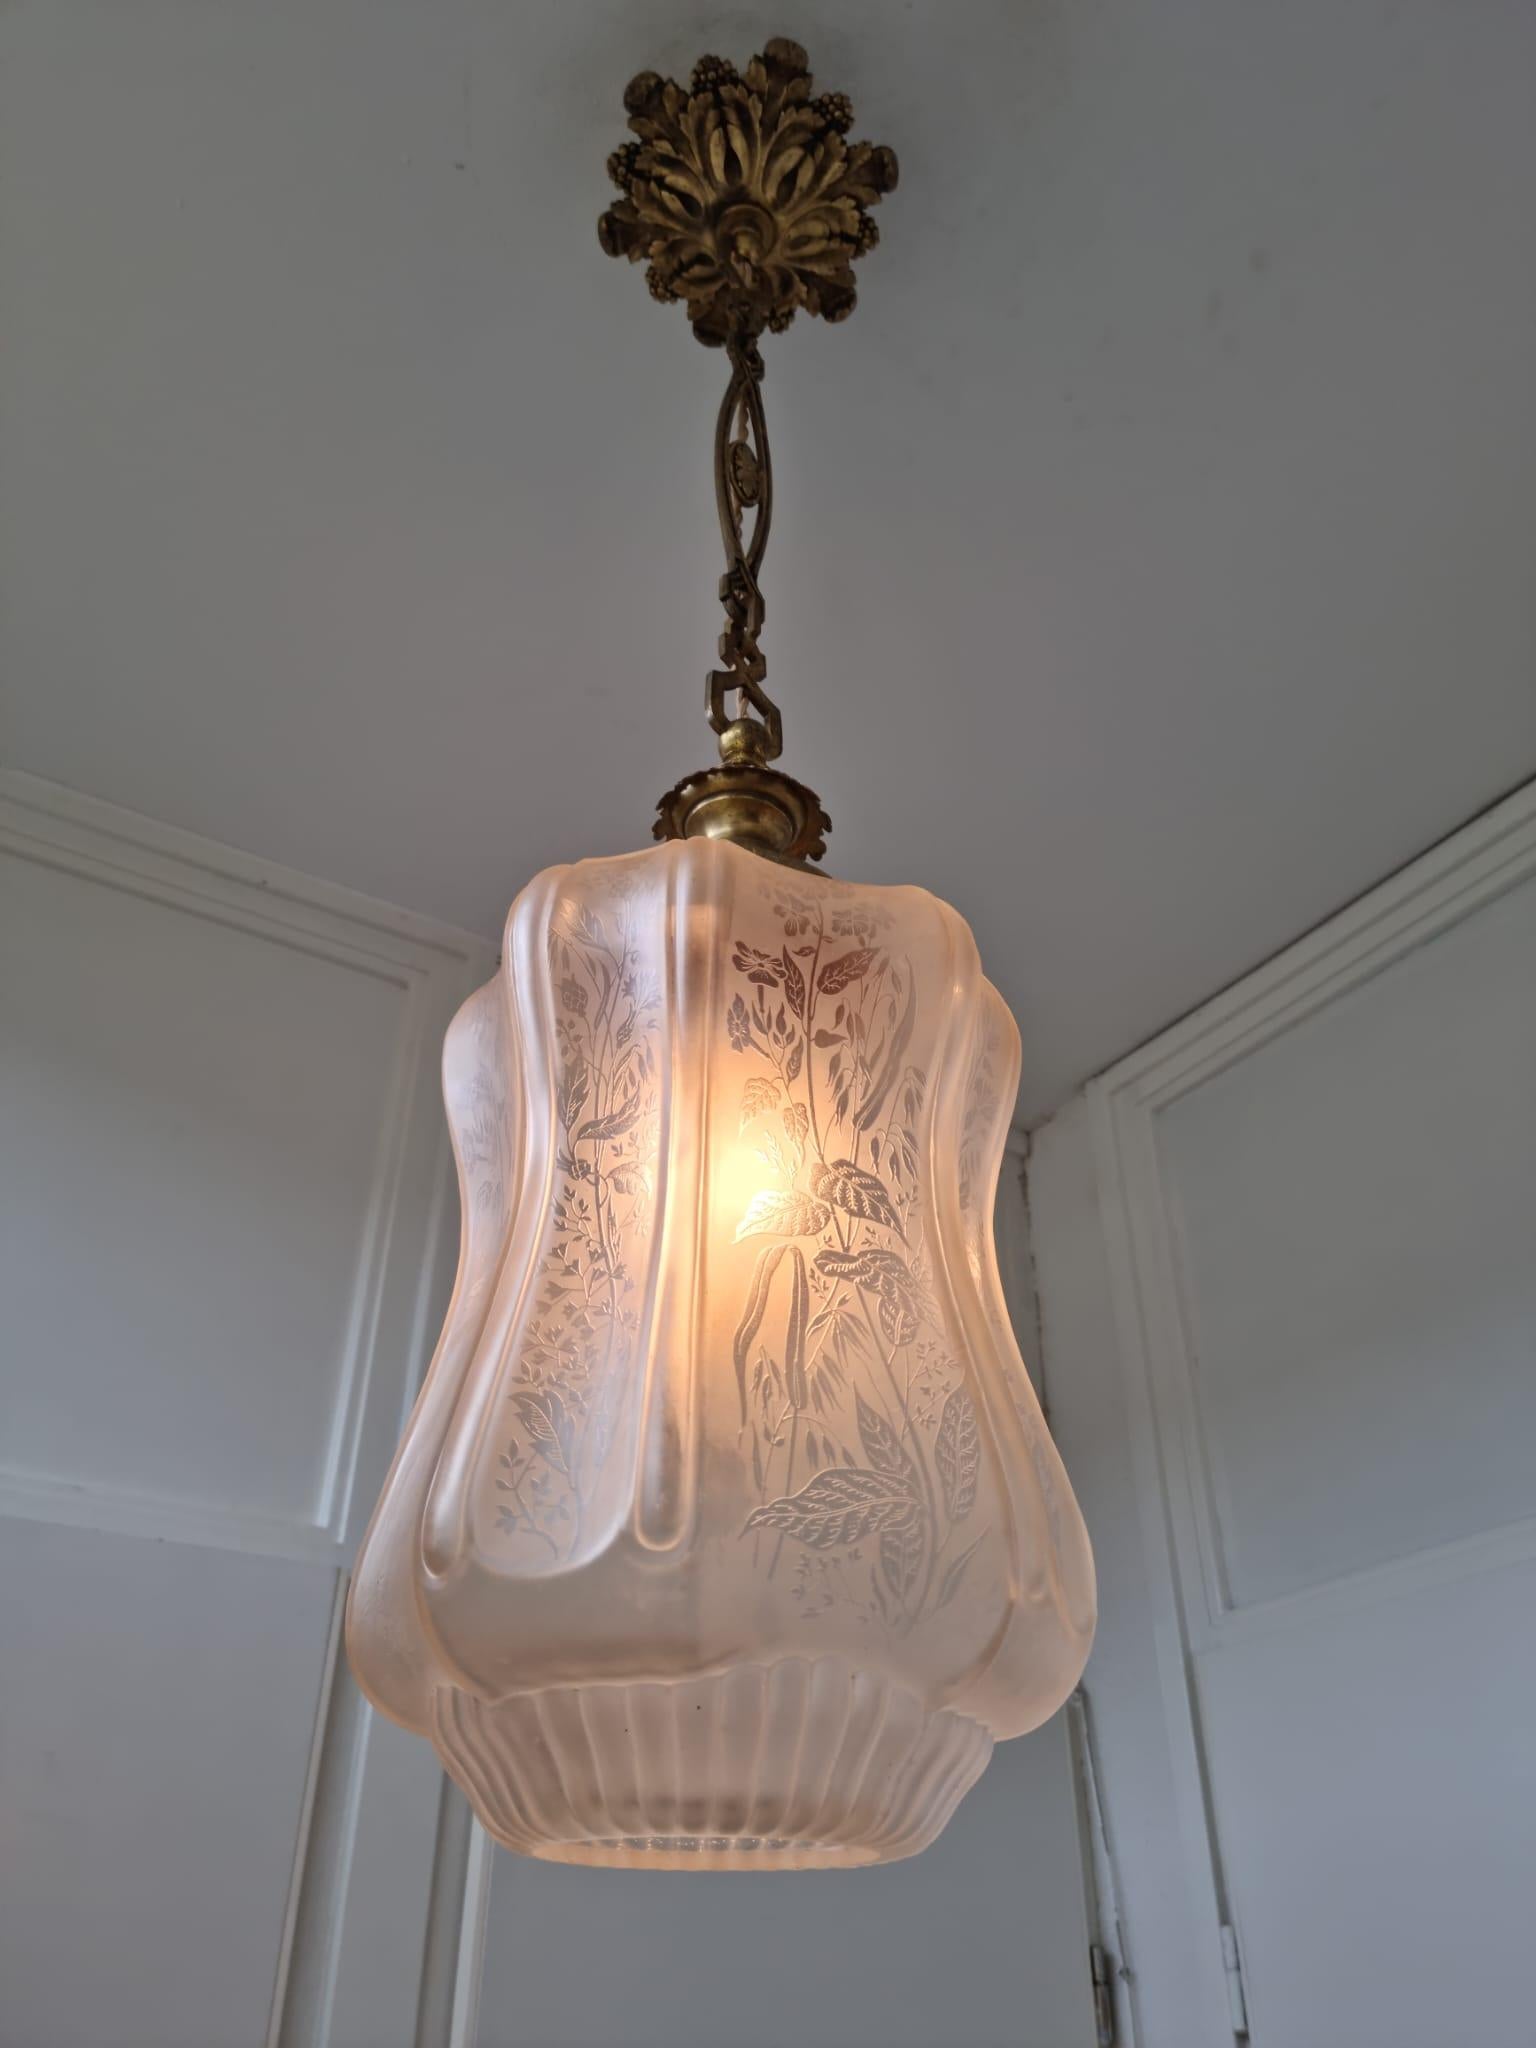 Large Antique French Art Nouveau Pedant Light 1910 Floral Glass Light Chandelier For Sale 14